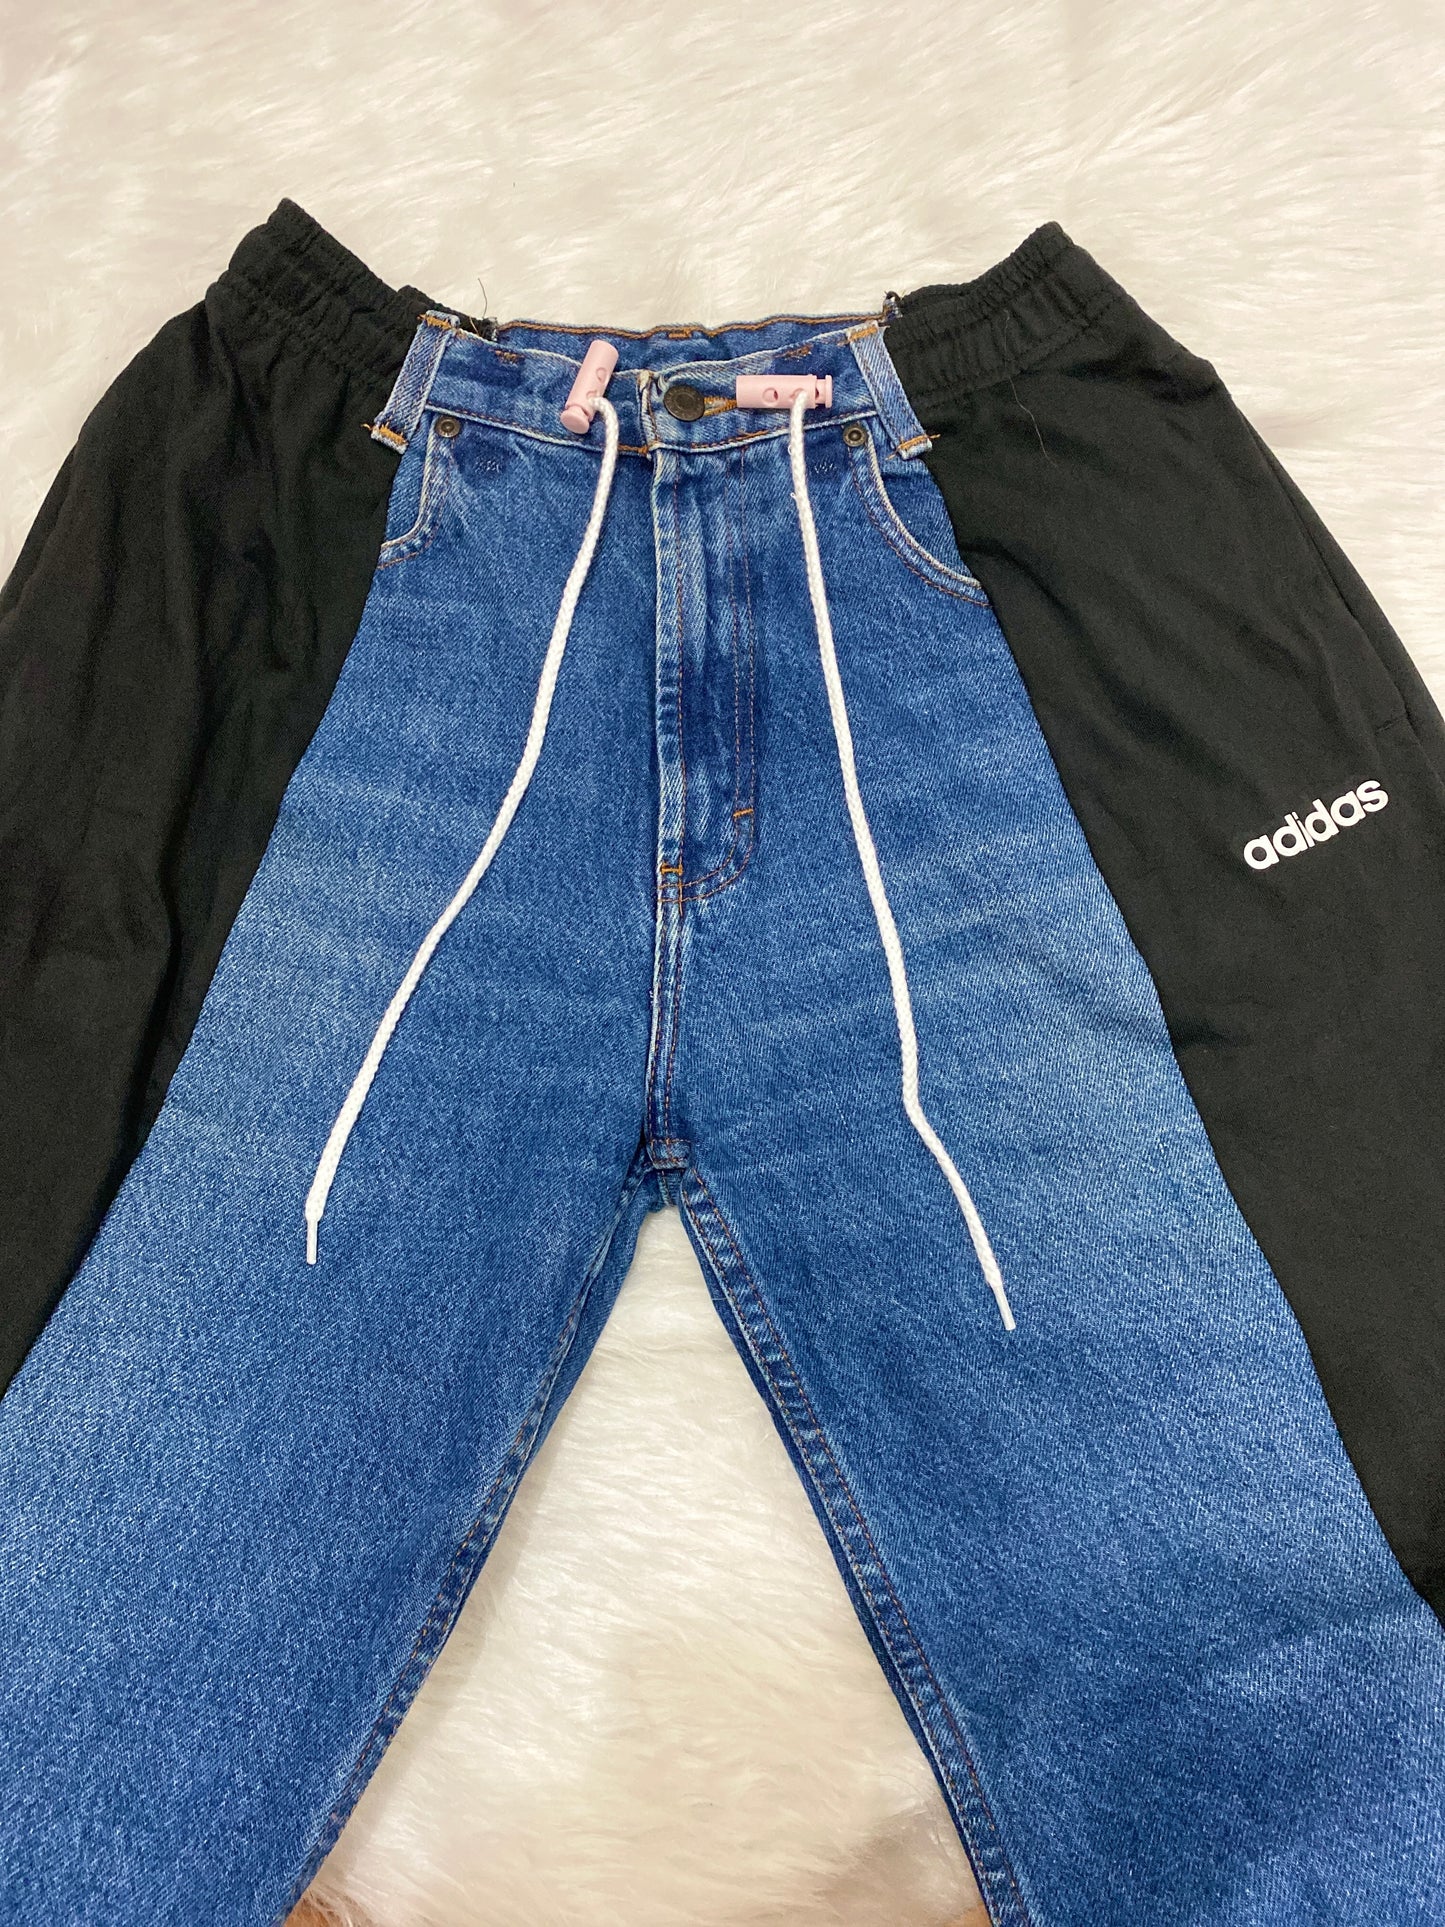 [現貨] Remade Sportpants X Jeans #PANT101